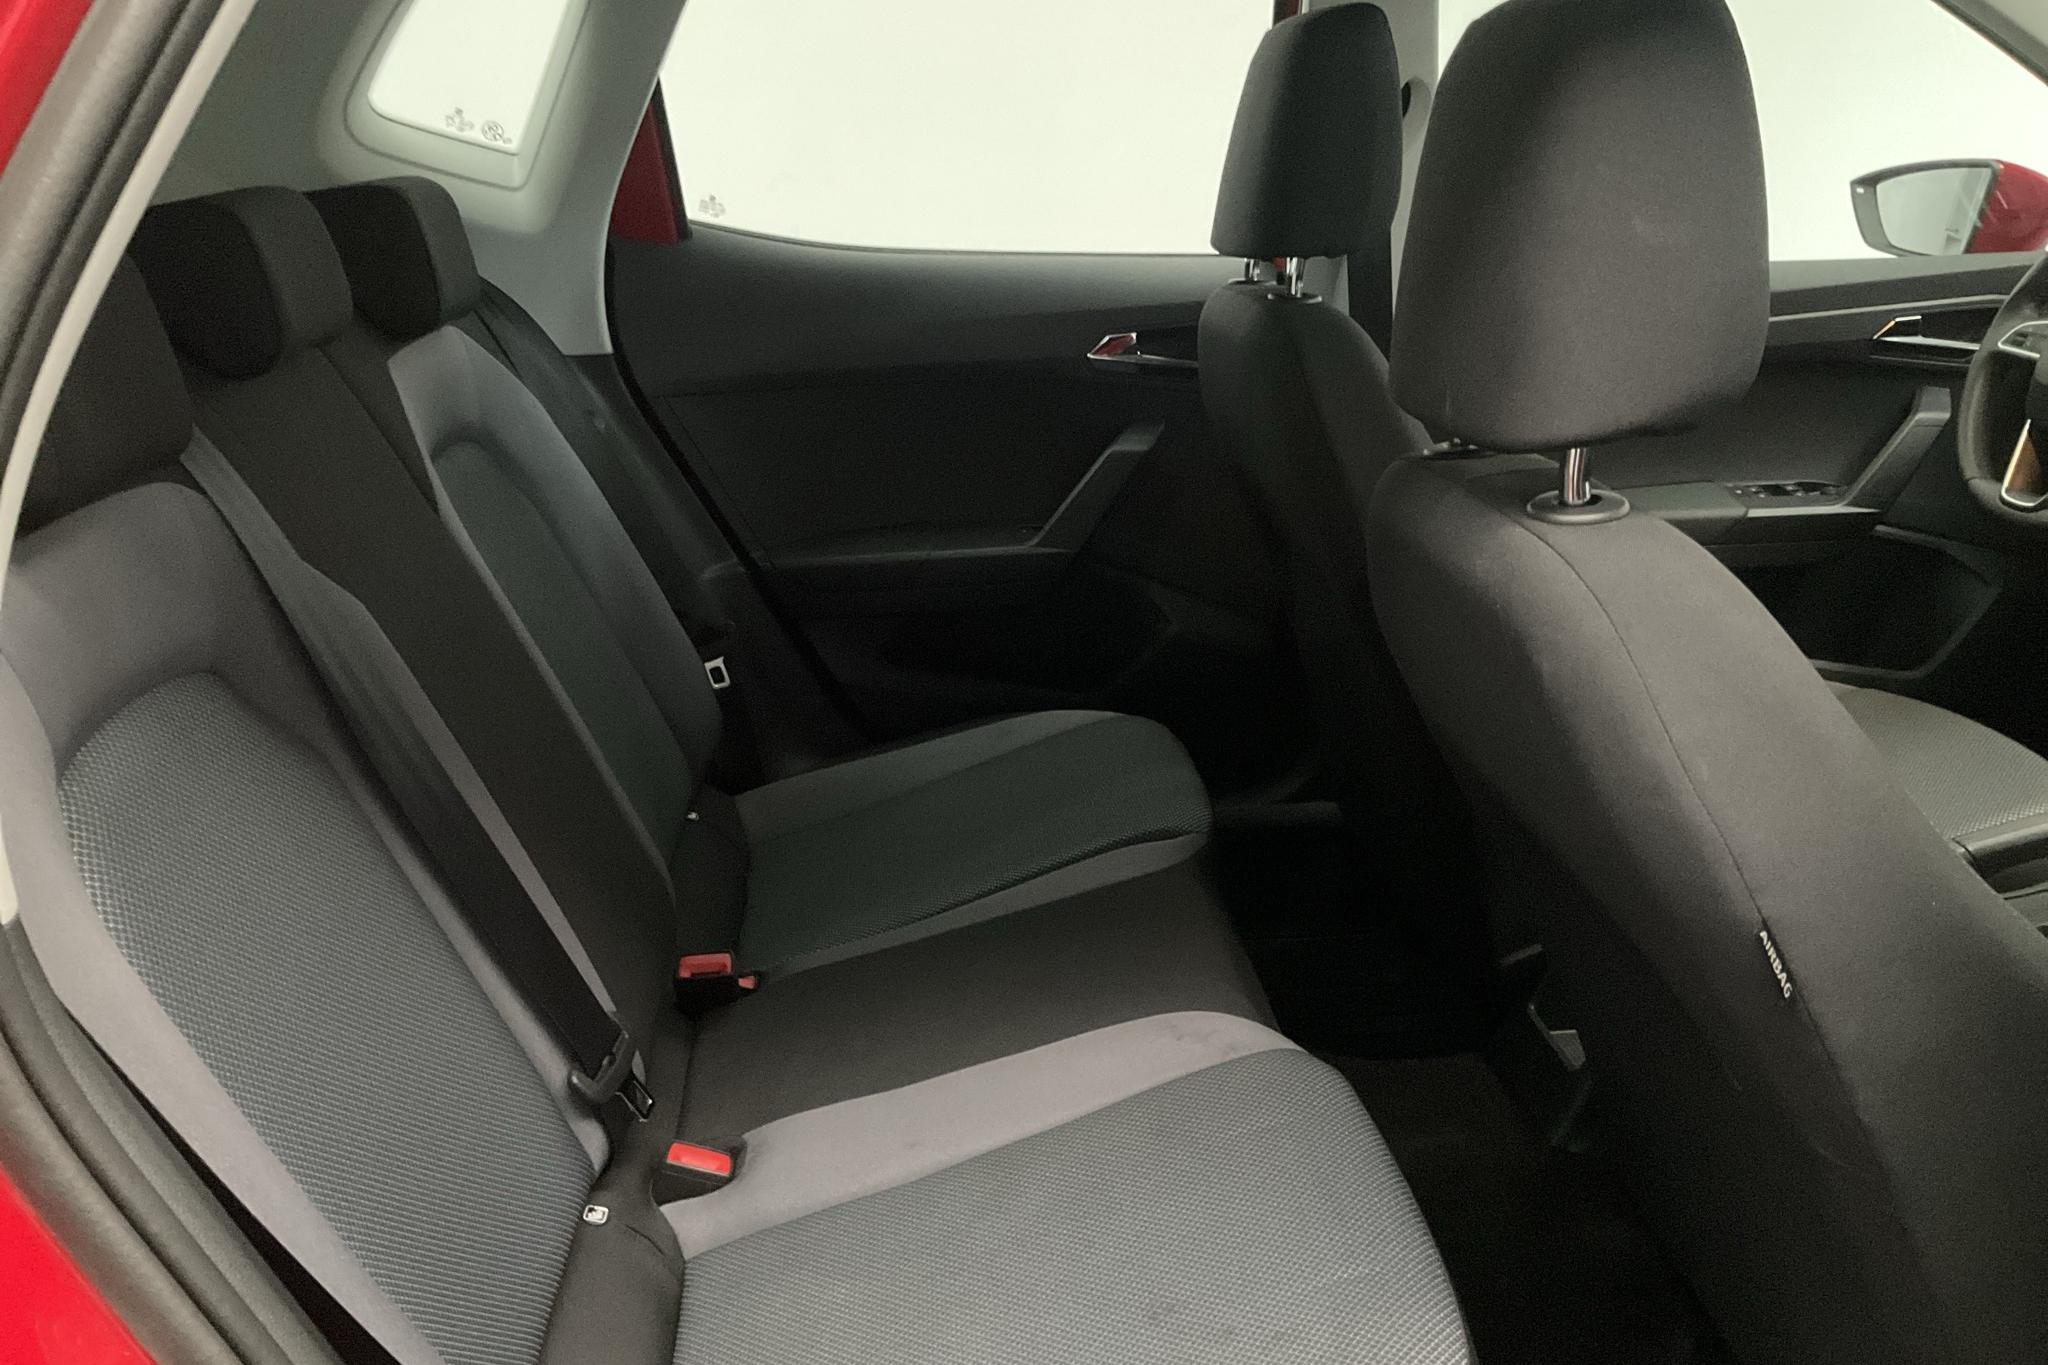 Seat Arona 1.6 TDI 5dr (95hk) - 15 720 km - Manual - red - 2021